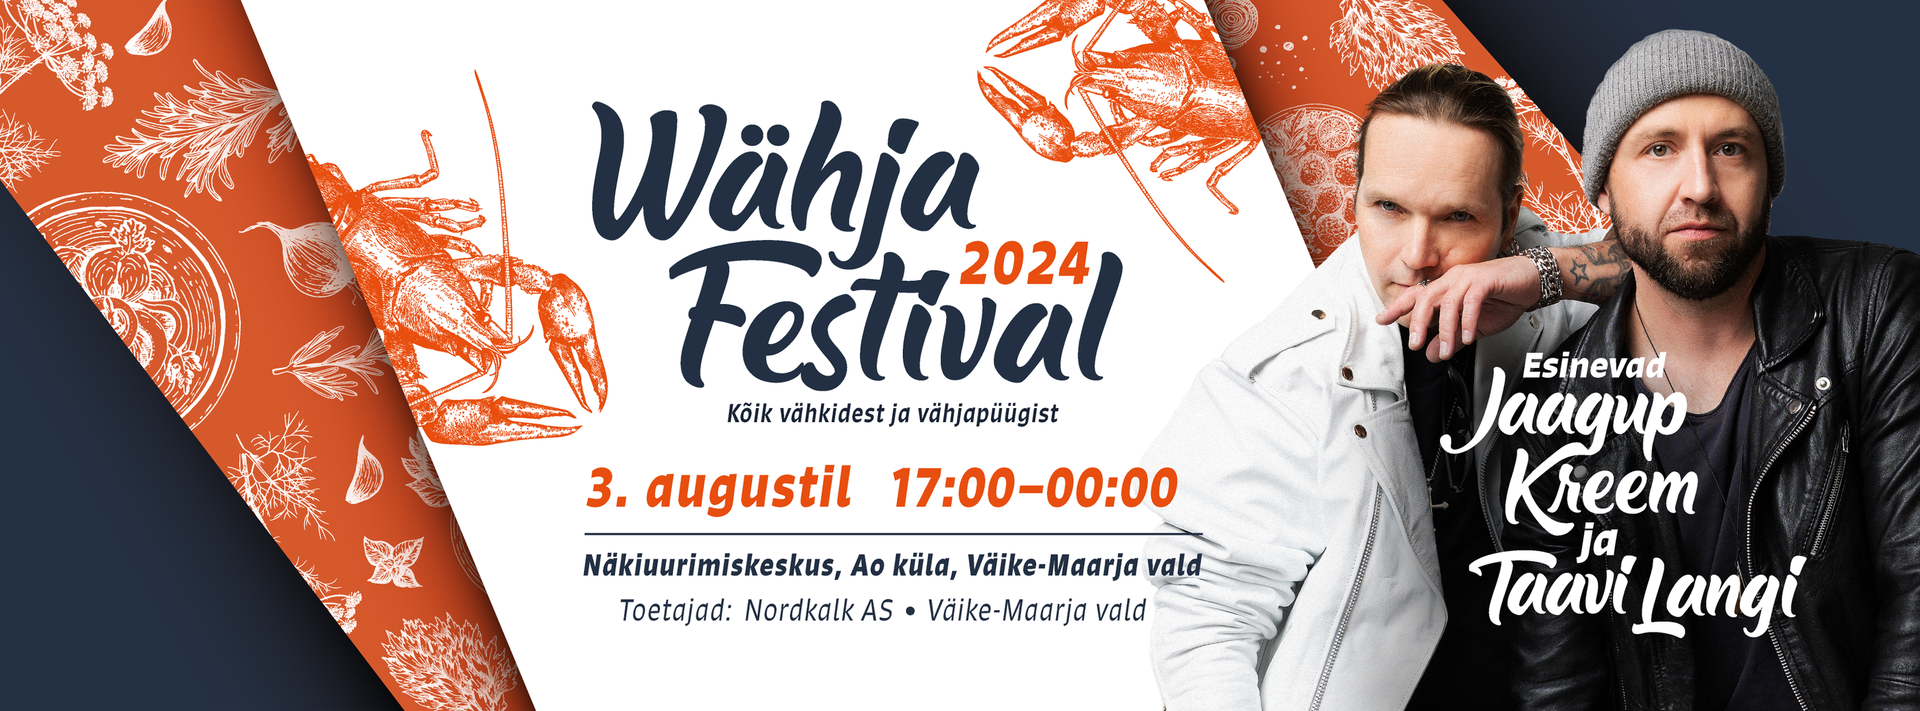 Wähja Festival